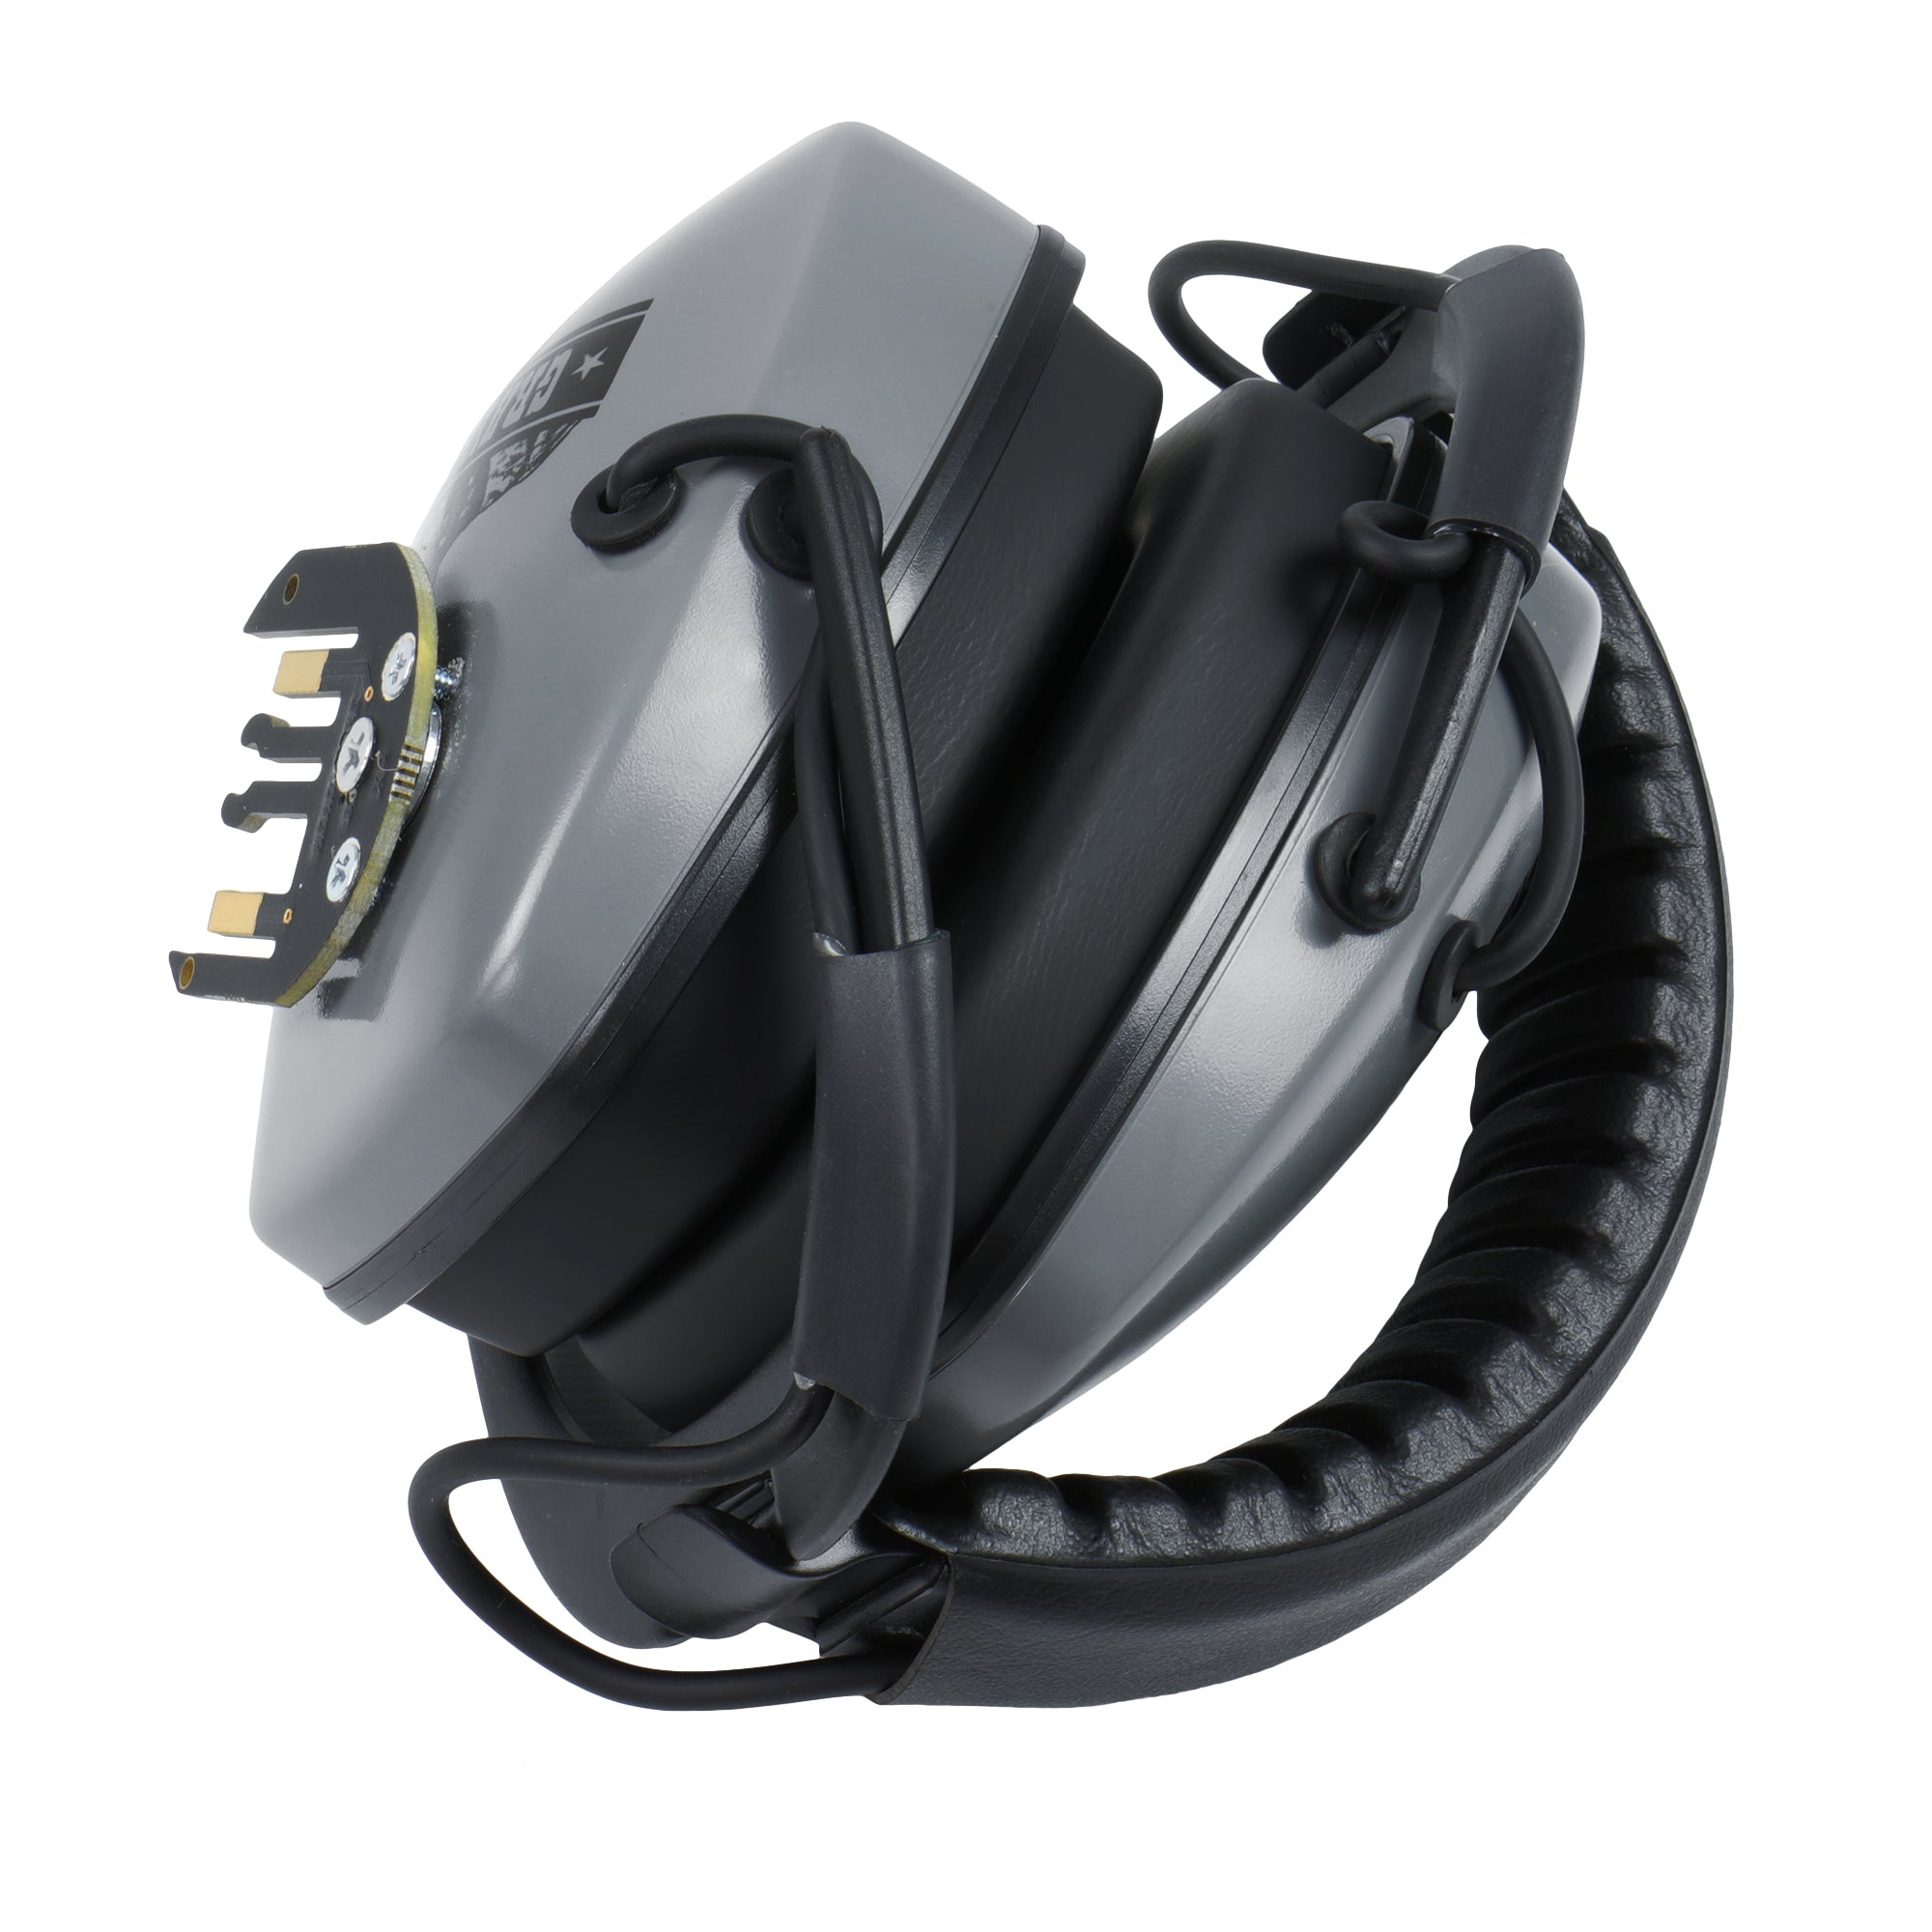 Detector Pro Gray Ghost XP Platinum Series Wireless Headphones for XP Deus | XP Deus II